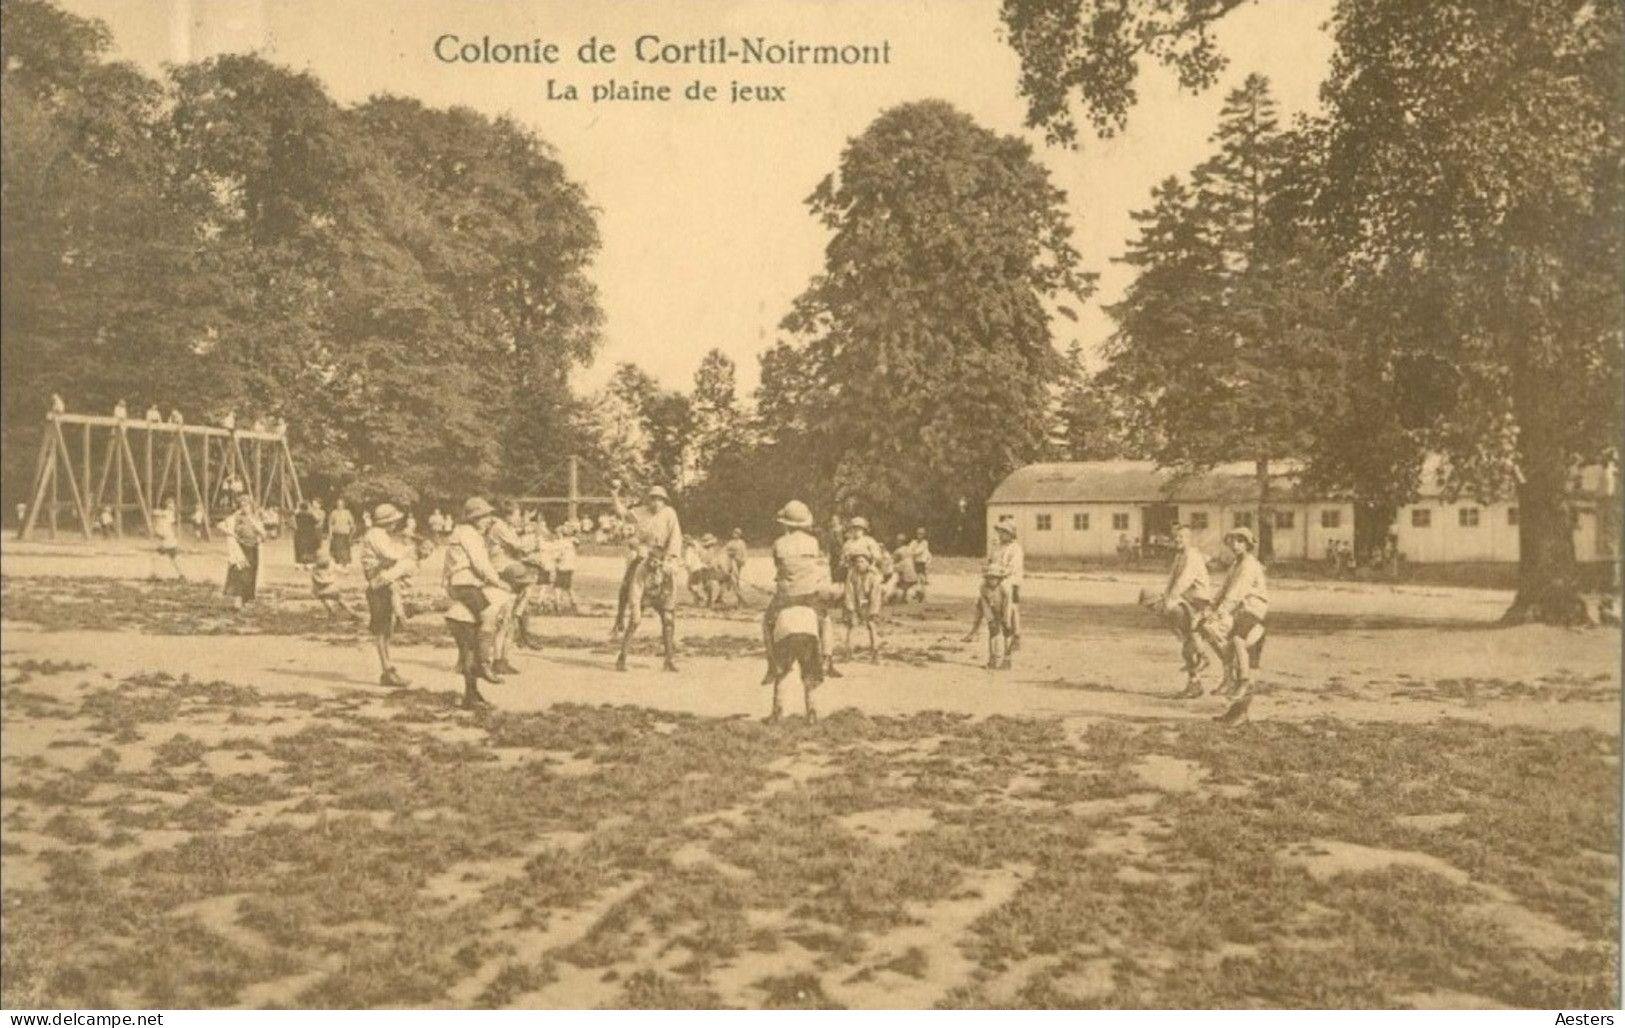 Waals-Brabant; Colonie de Cortil-Noirmont, 12 Cartes Postales différentes - 2 voyagé / 10 non voyagé. (24 scans)